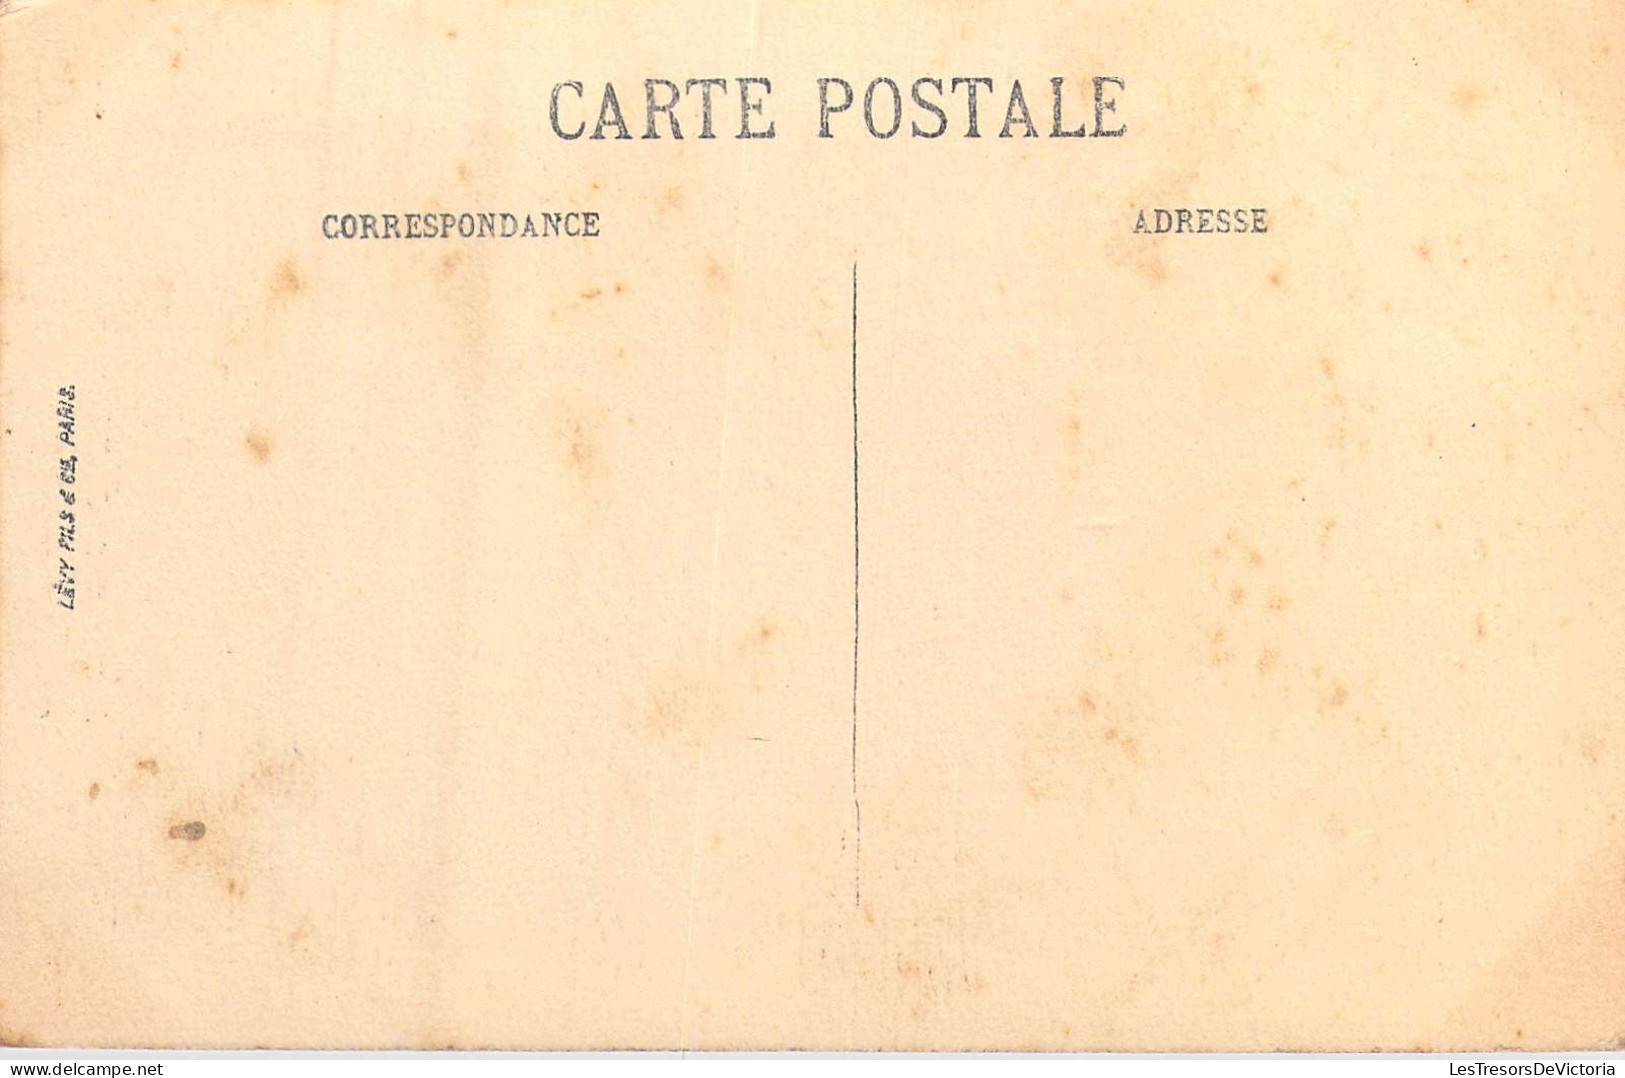 FRANCE - 06 - Nice - La Croix De Marbre - Carte Postale Ancienne - Monuments